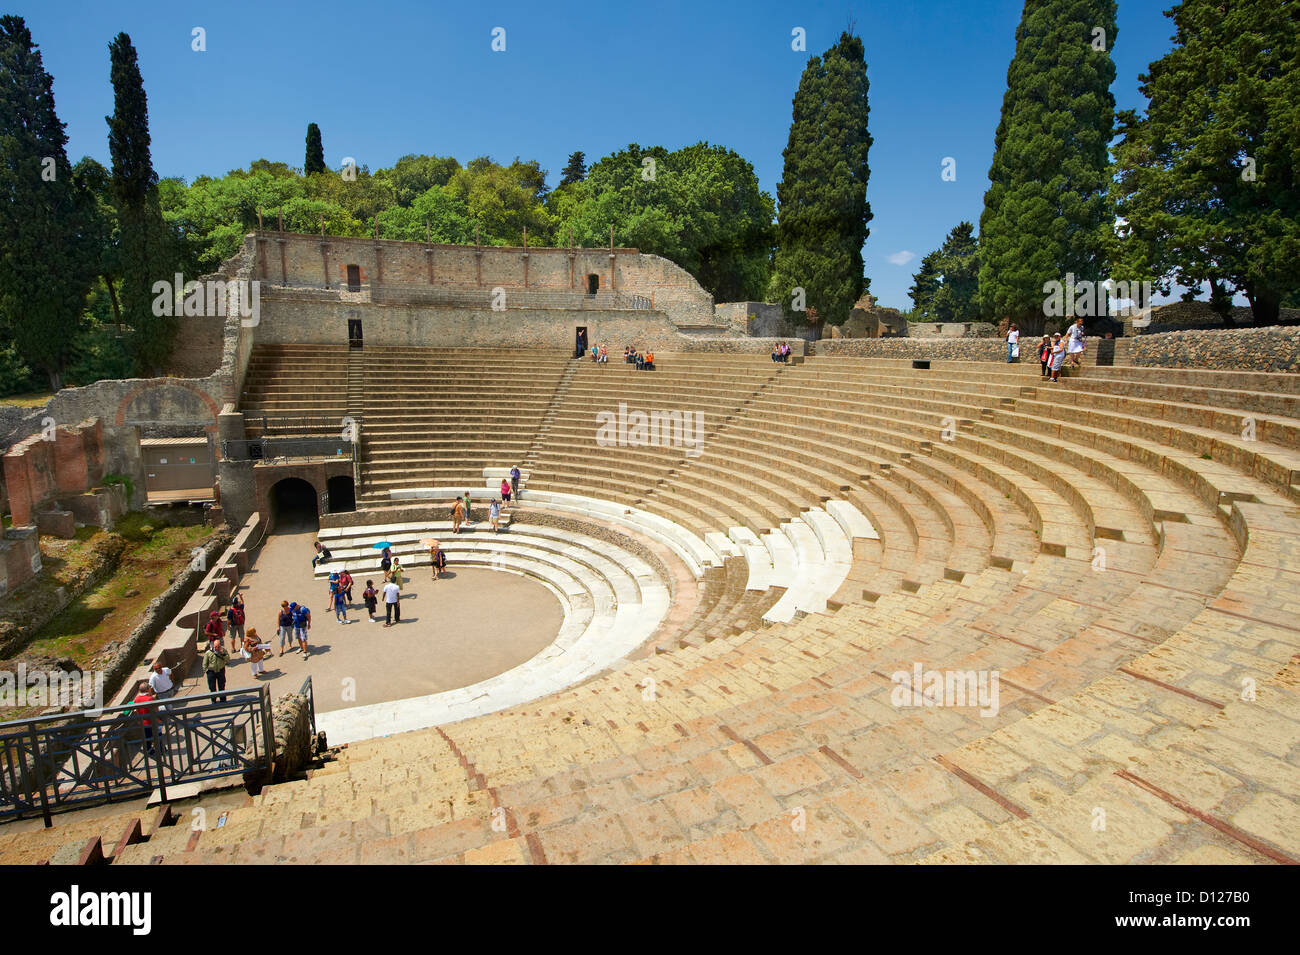 The Roman Great Theatre of Pompeii Italy Stock Photo